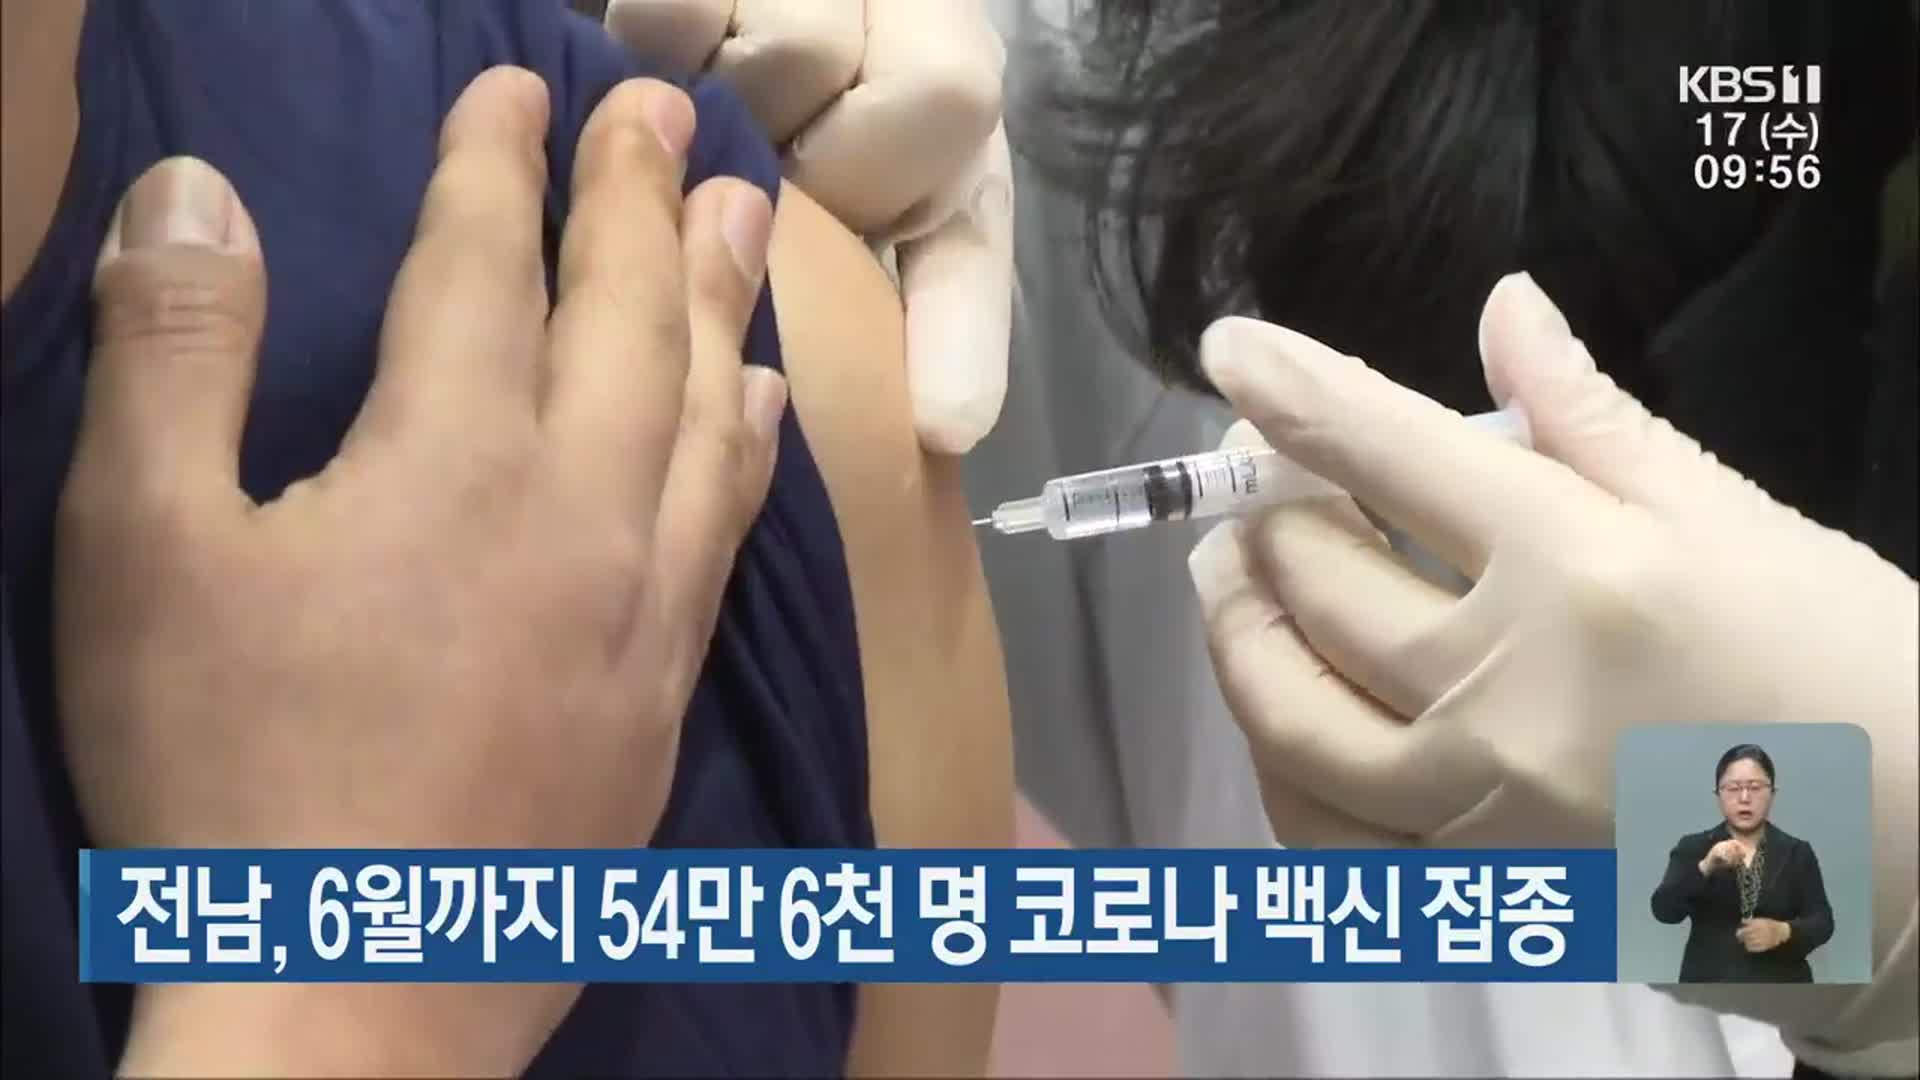 전남, 6월까지 54만 6천 명 코로나19 백신 접종